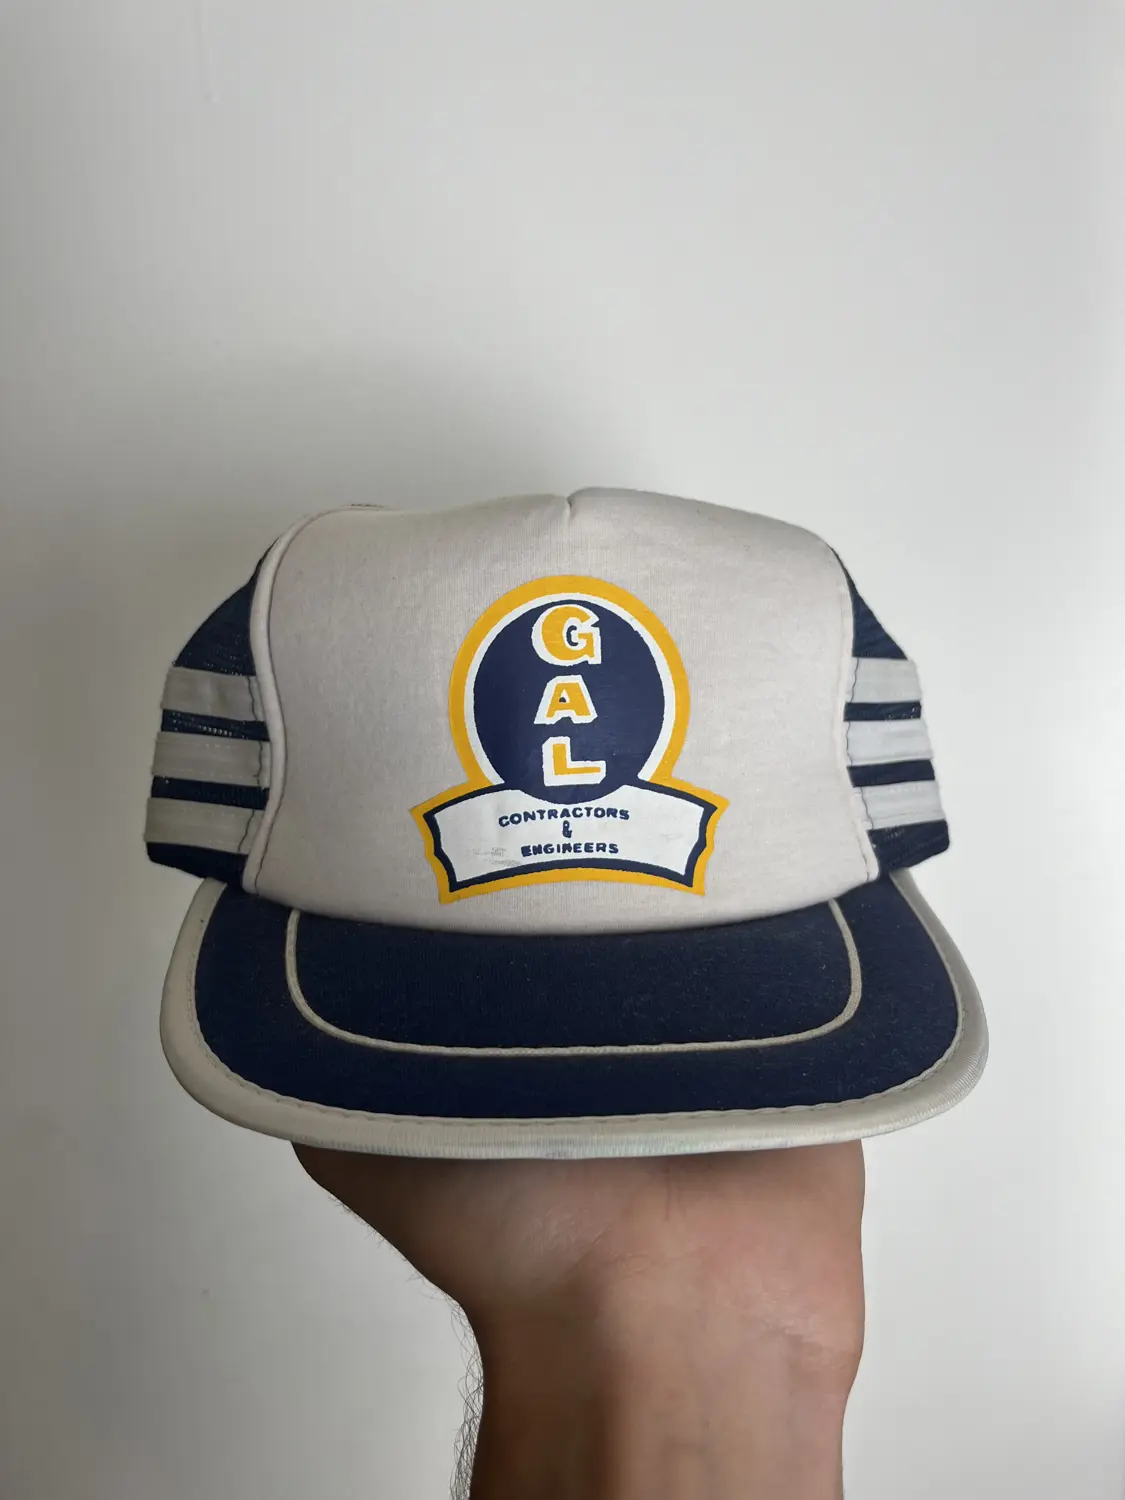 Gal hat